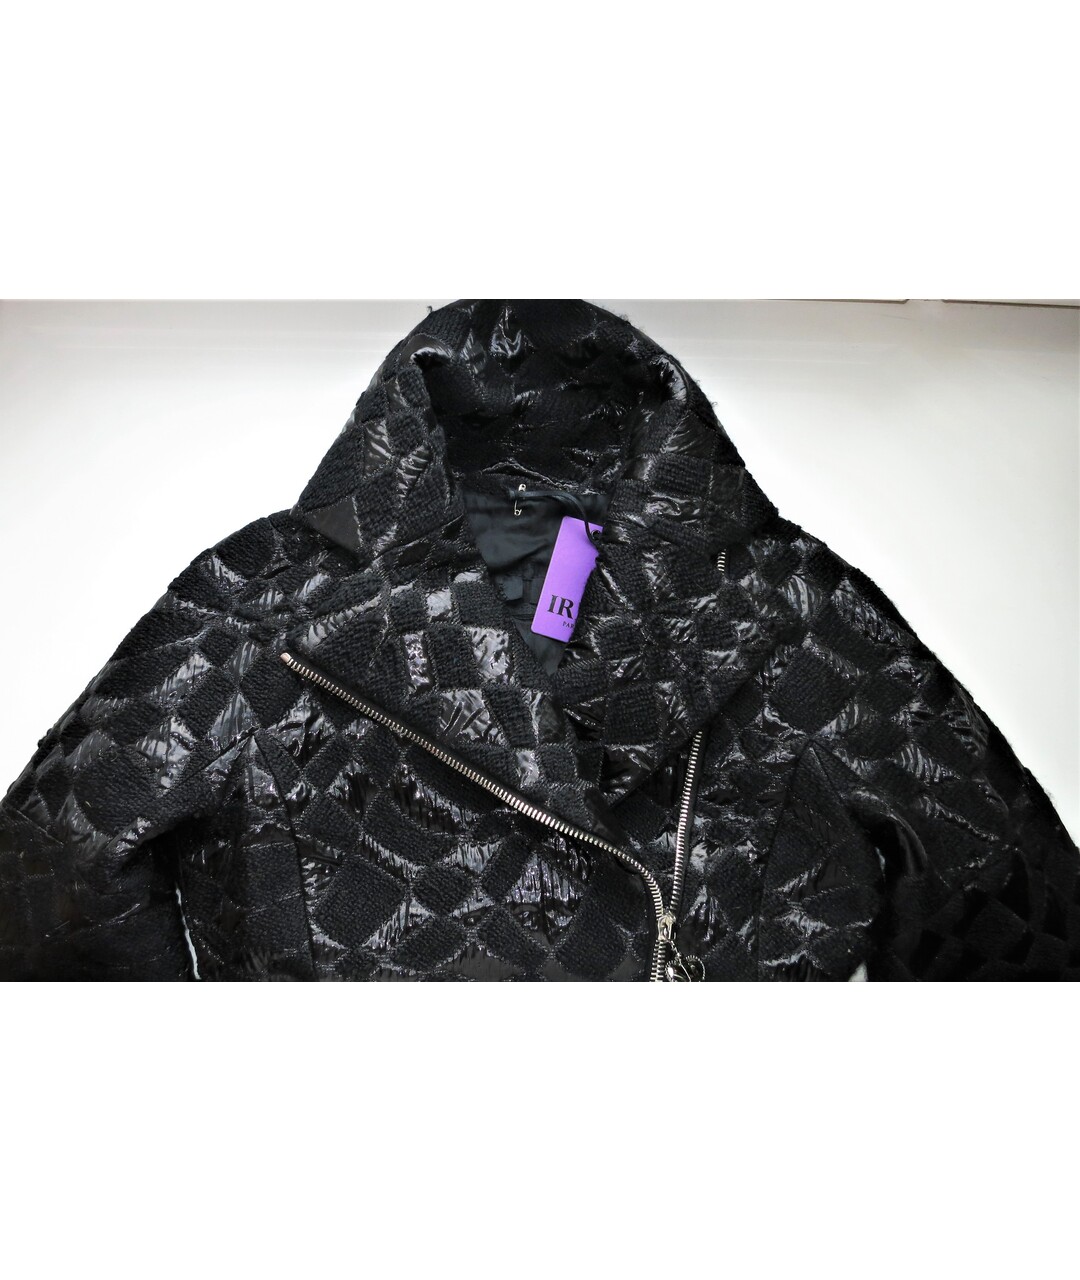 IRFE Черный шерстяной жакет/пиджак, фото 2